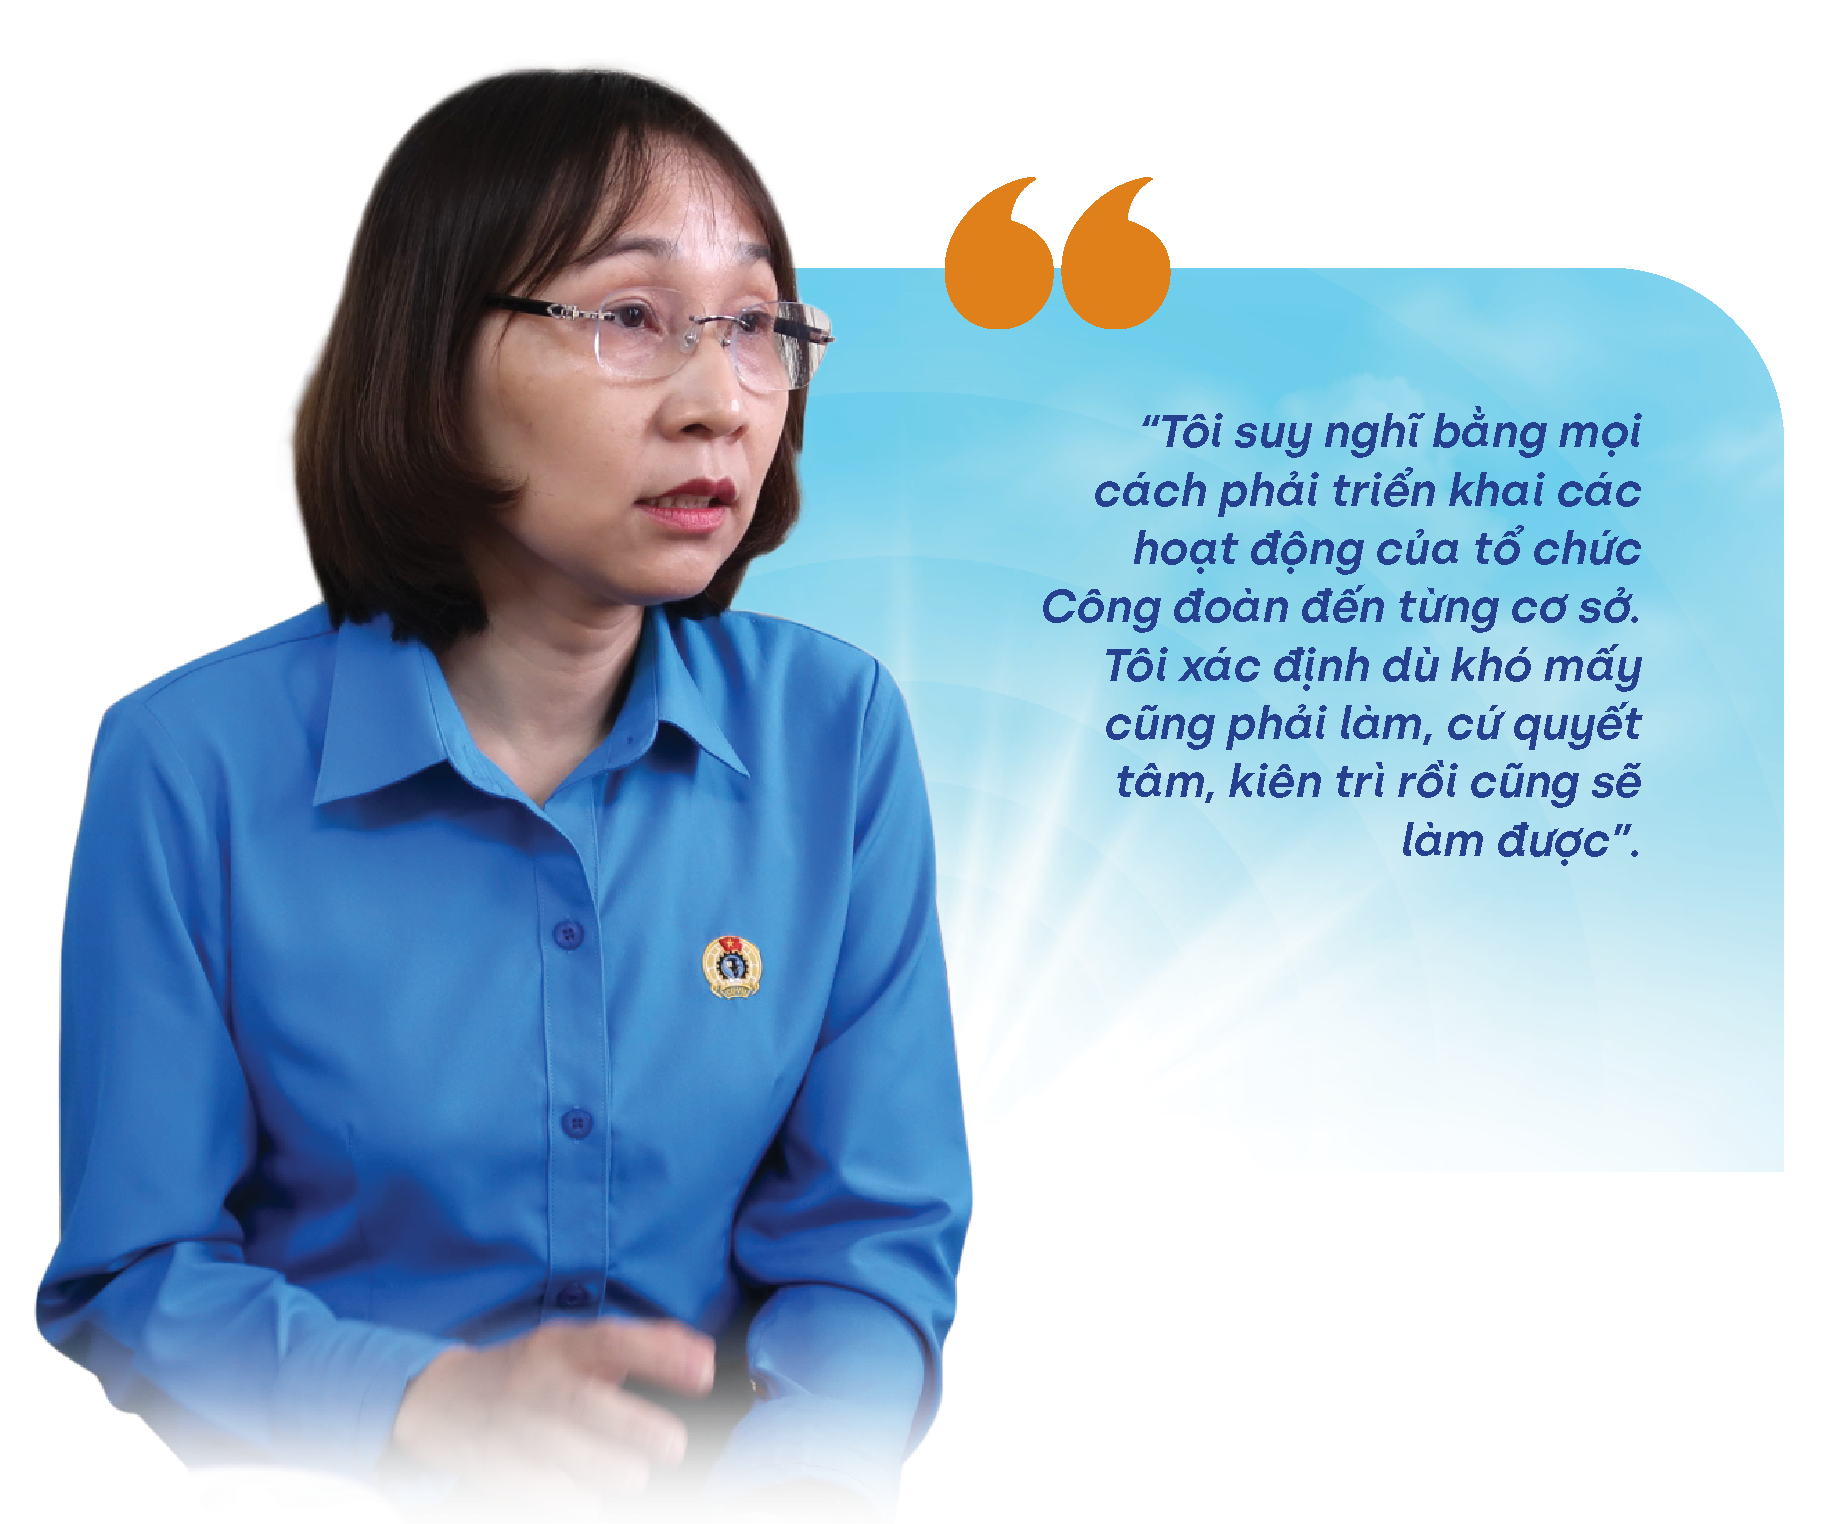 “Giải thưởng Nguyễn Văn Linh là động lực để tôi cố gắng hơn"